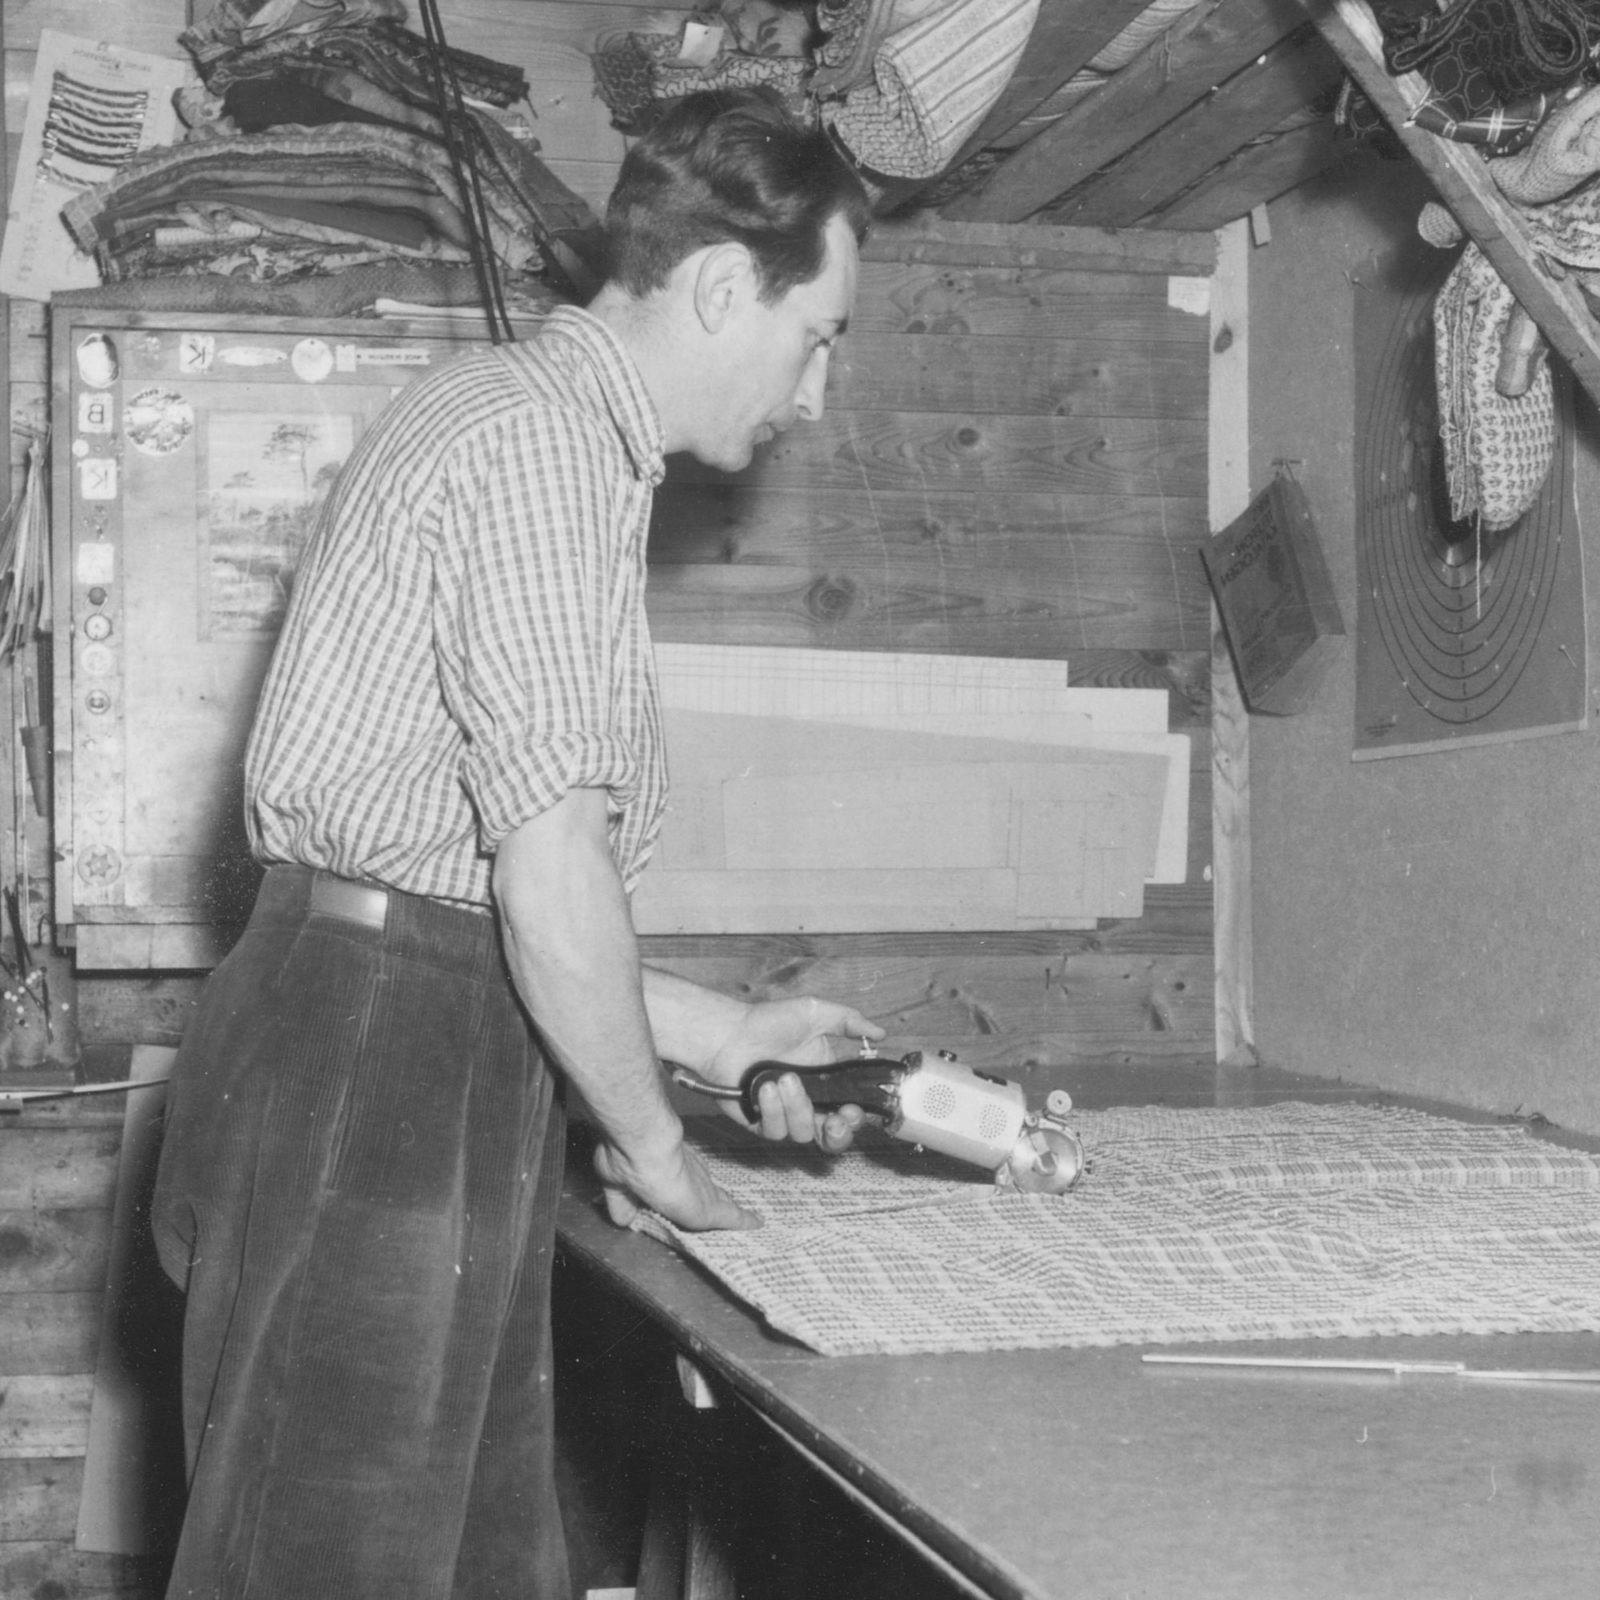 Homme coupant du tissu avec un cutter rotatif, années 1940.